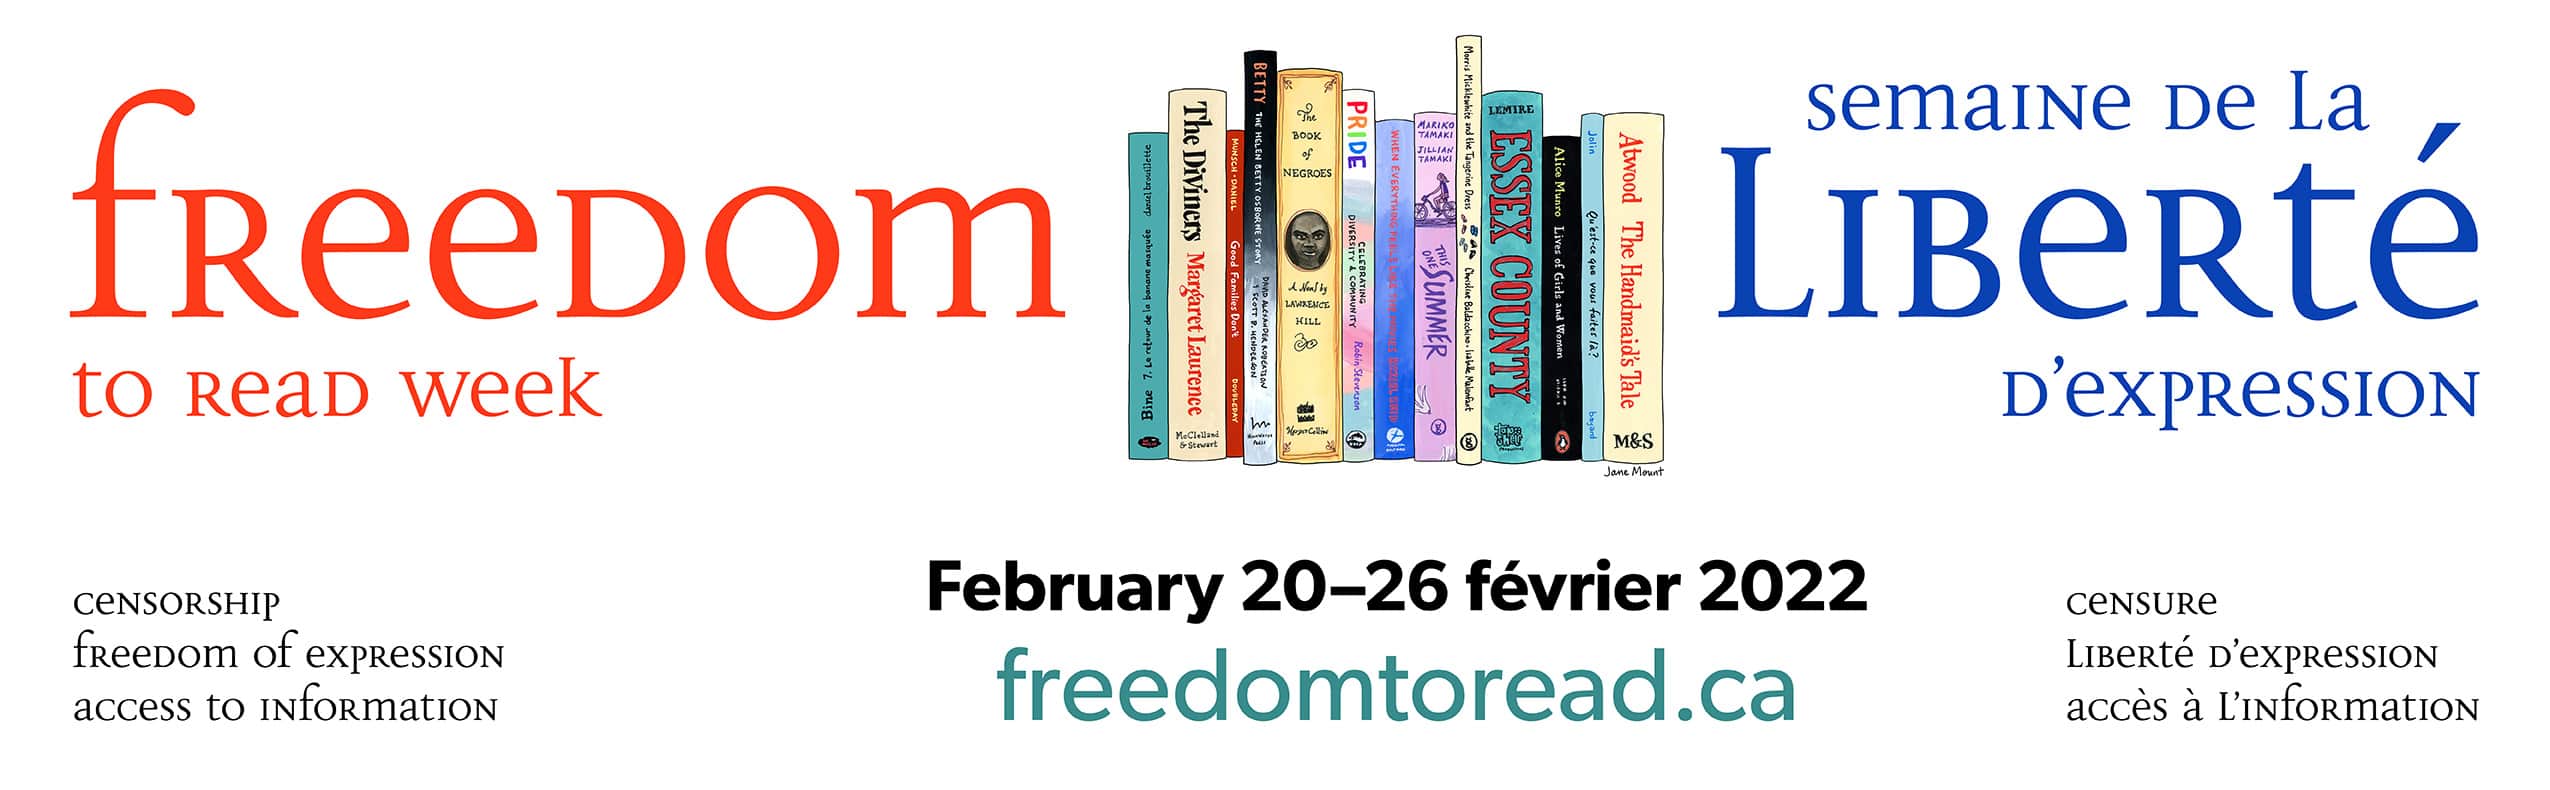 Freedom to Read Week 2022 - February 20-26